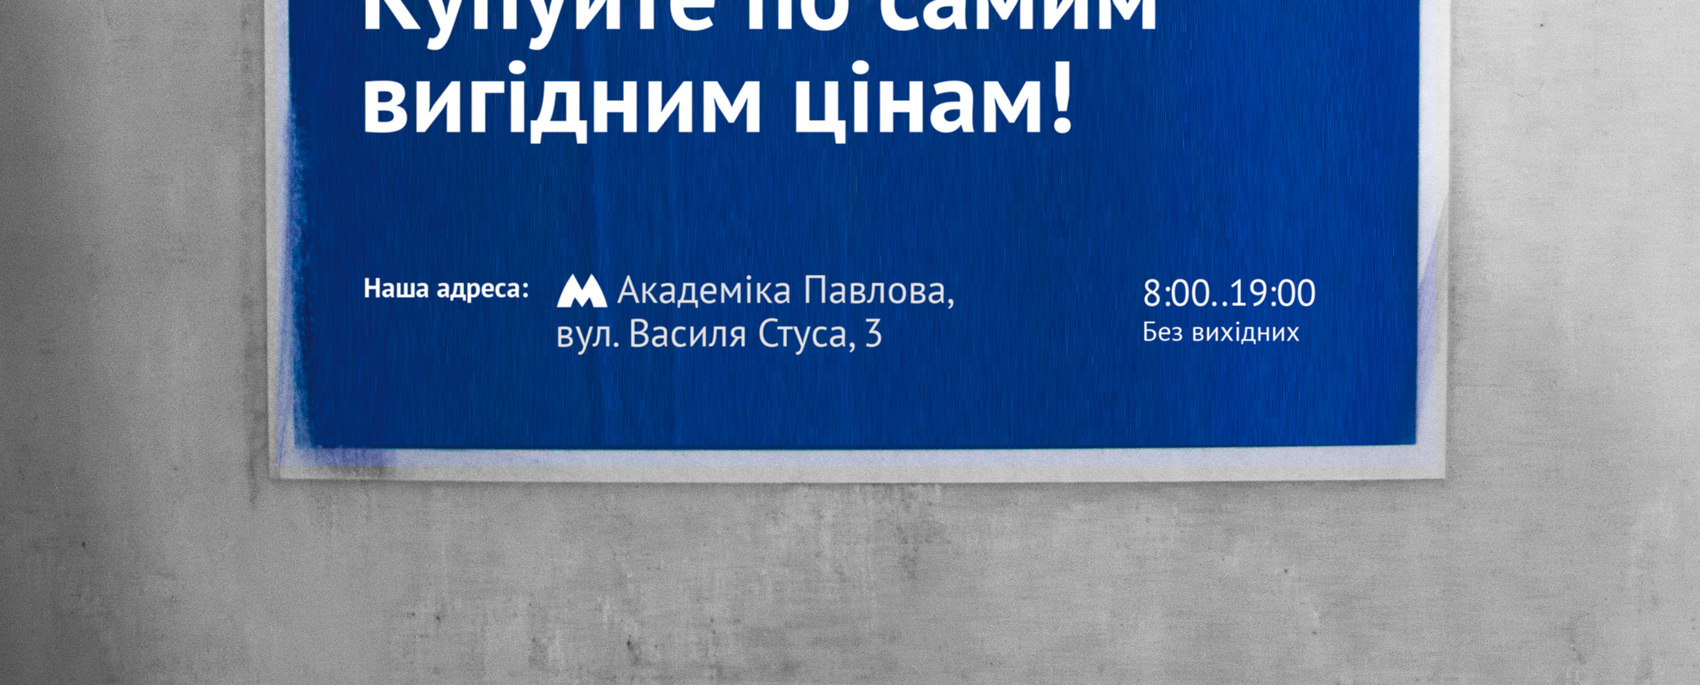 Логотип Харьковского метро